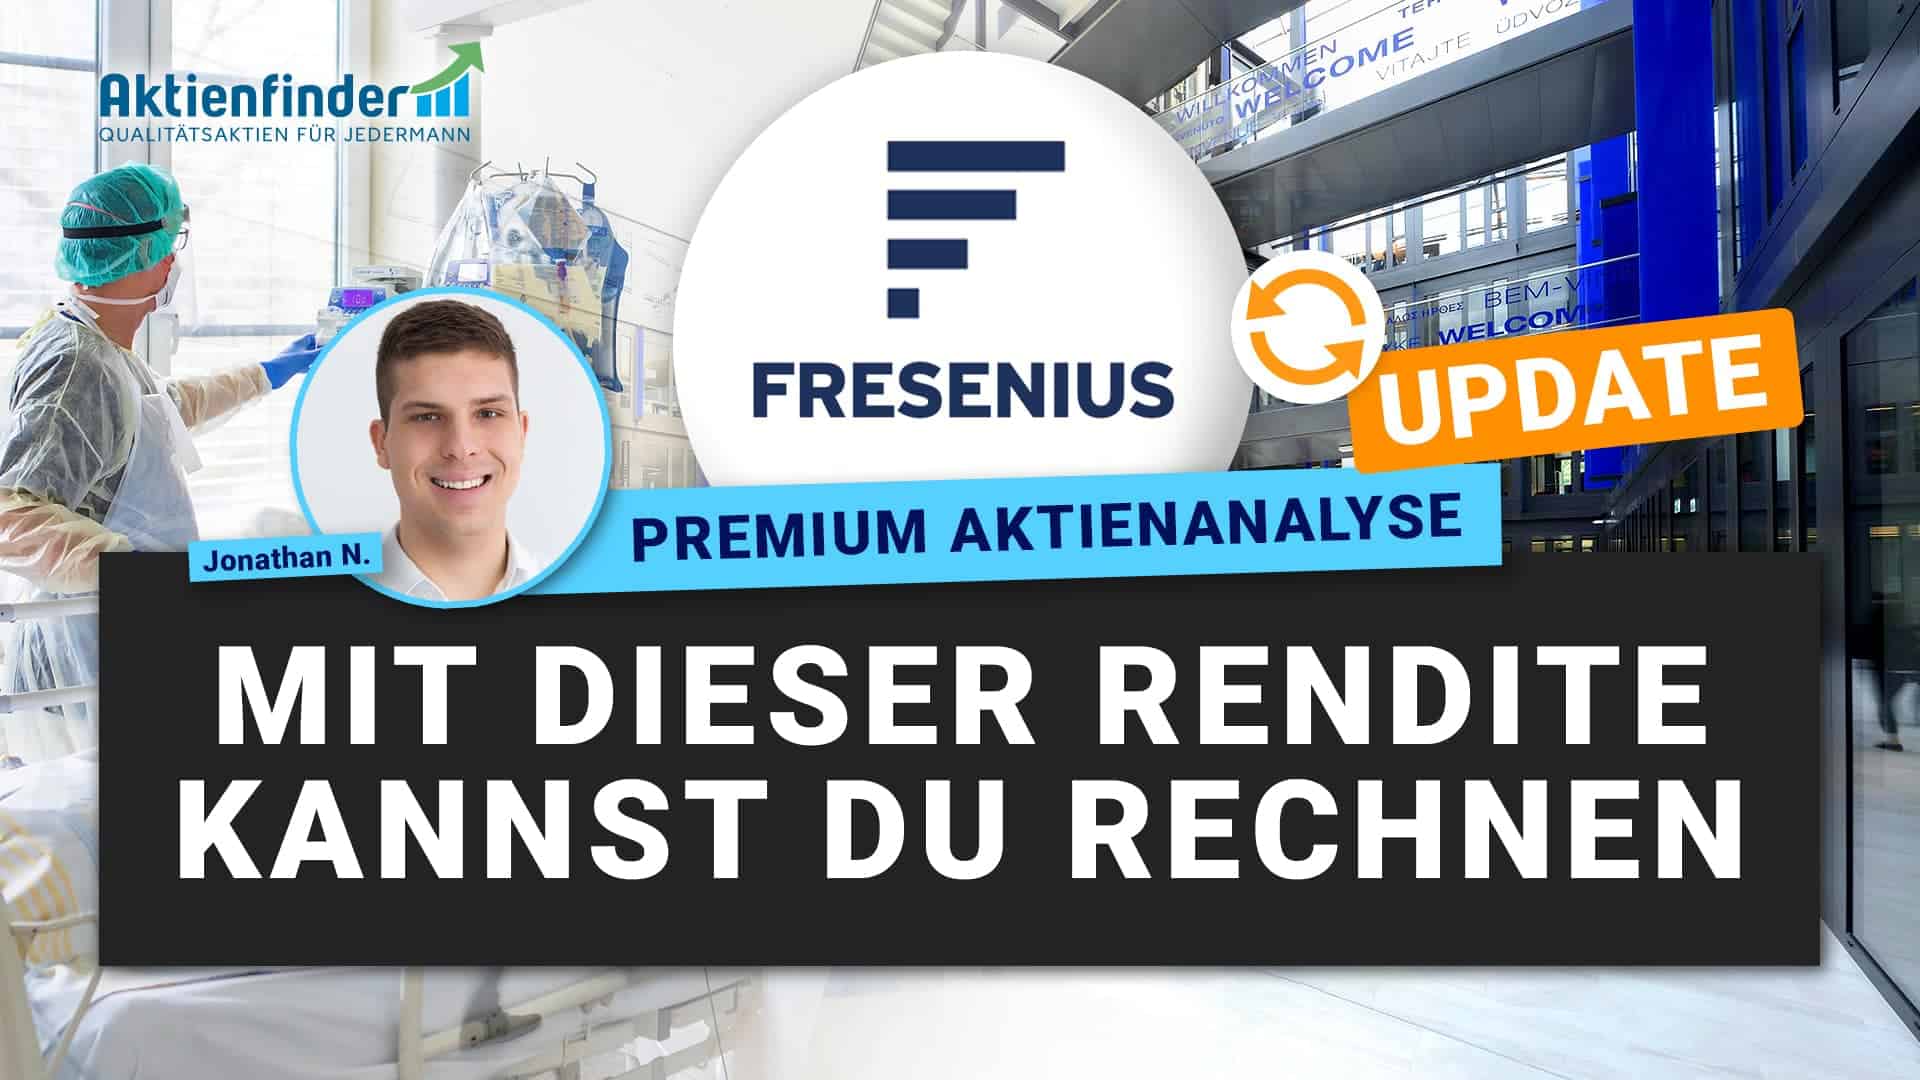 Fresenius Aktie - Mit dieser Rendite kannst du rechnen - Update